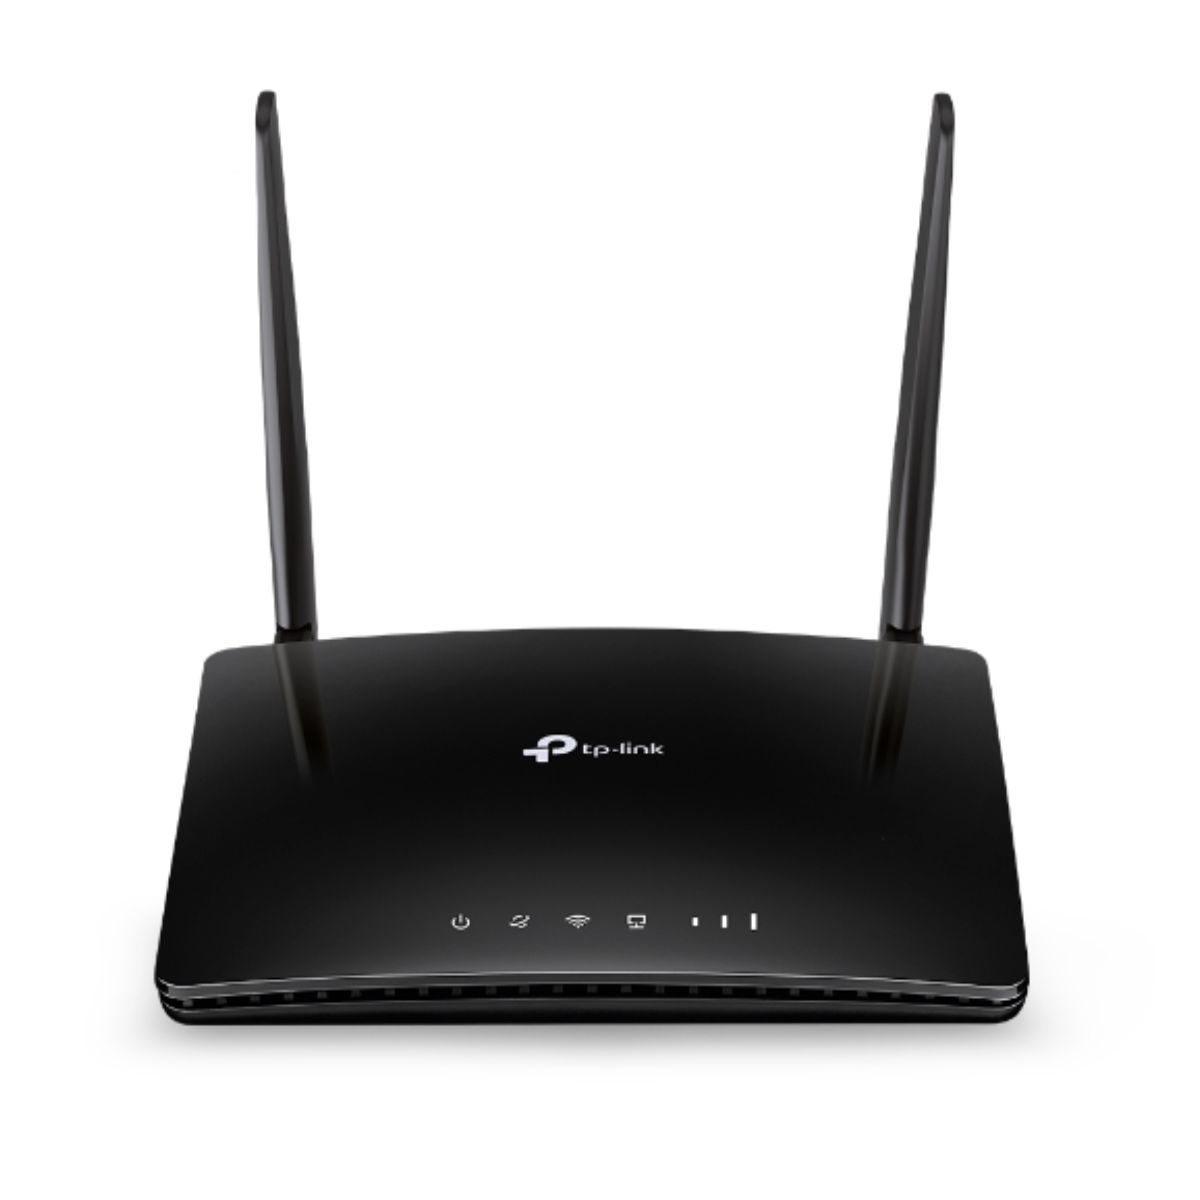 Router wifi băng tần kép 4G LTE TP-Link Archer MR400 tốc độ 300 Mbps trên 2.4 GHz và 867 Mbps trên 5 GHz